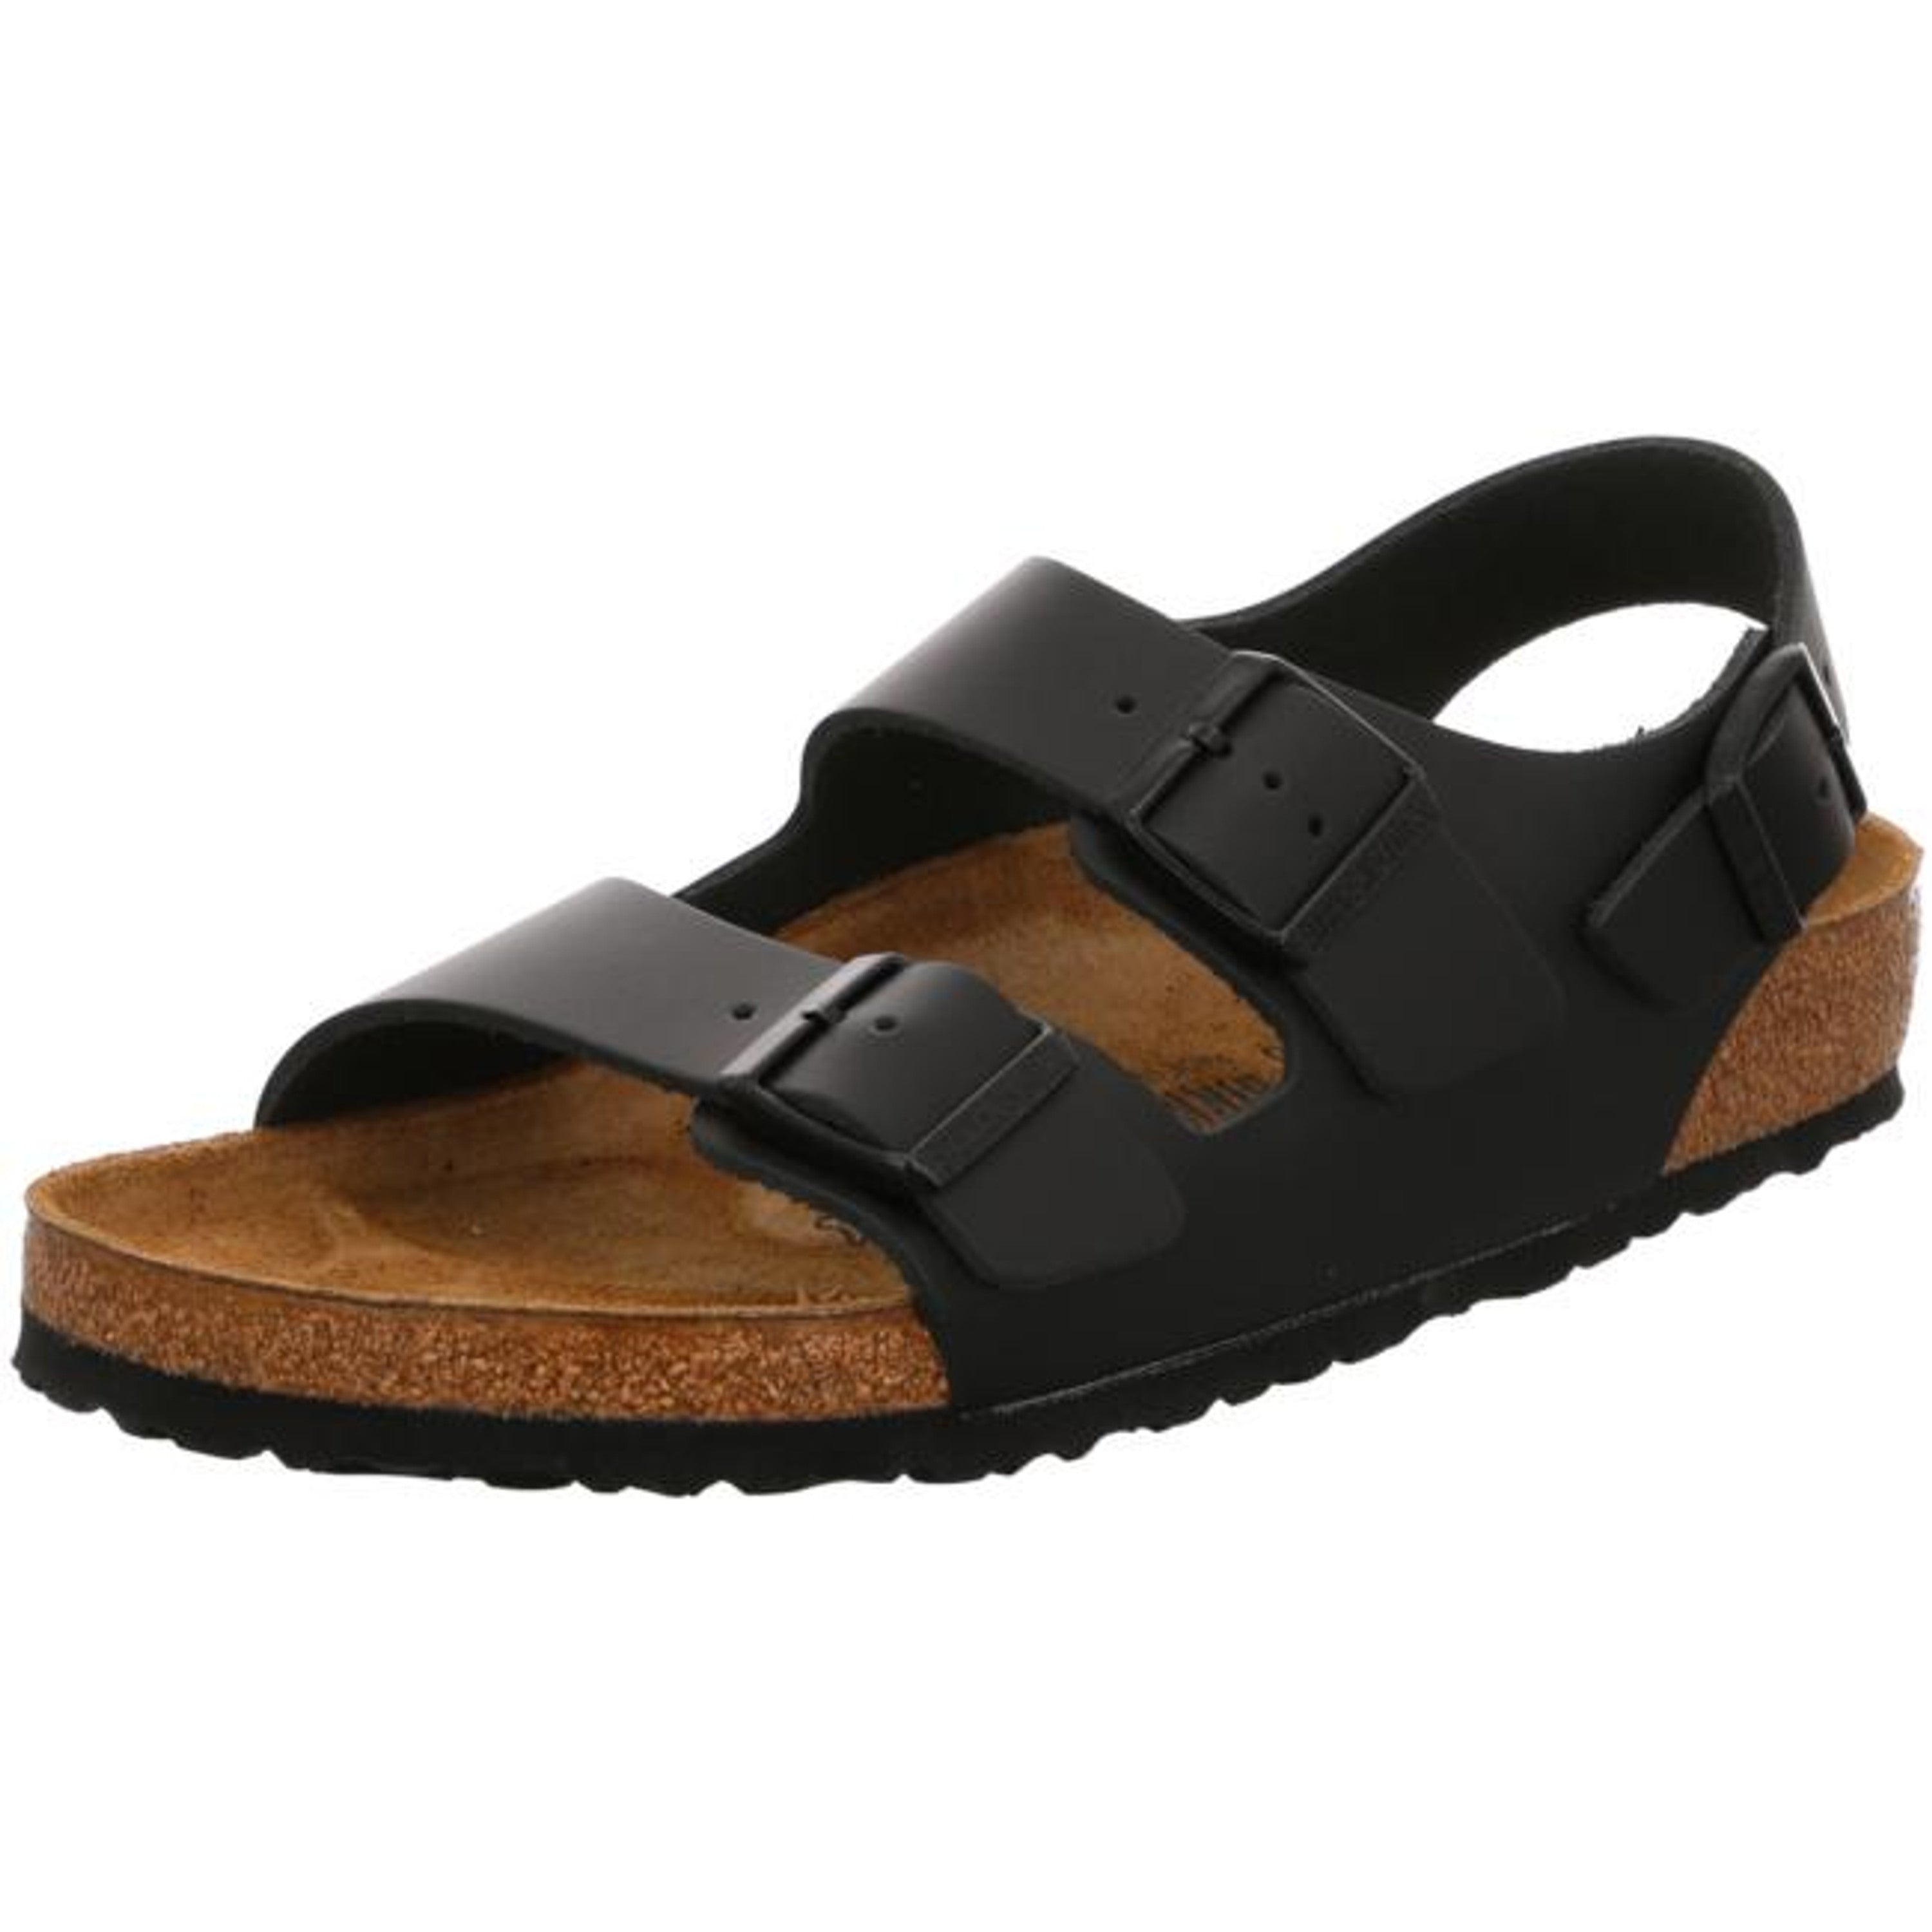 Birkenstock Milano Sandals Ankle Strap Slingback Slipper Leather Shoes Black regular - Bartel-Shop